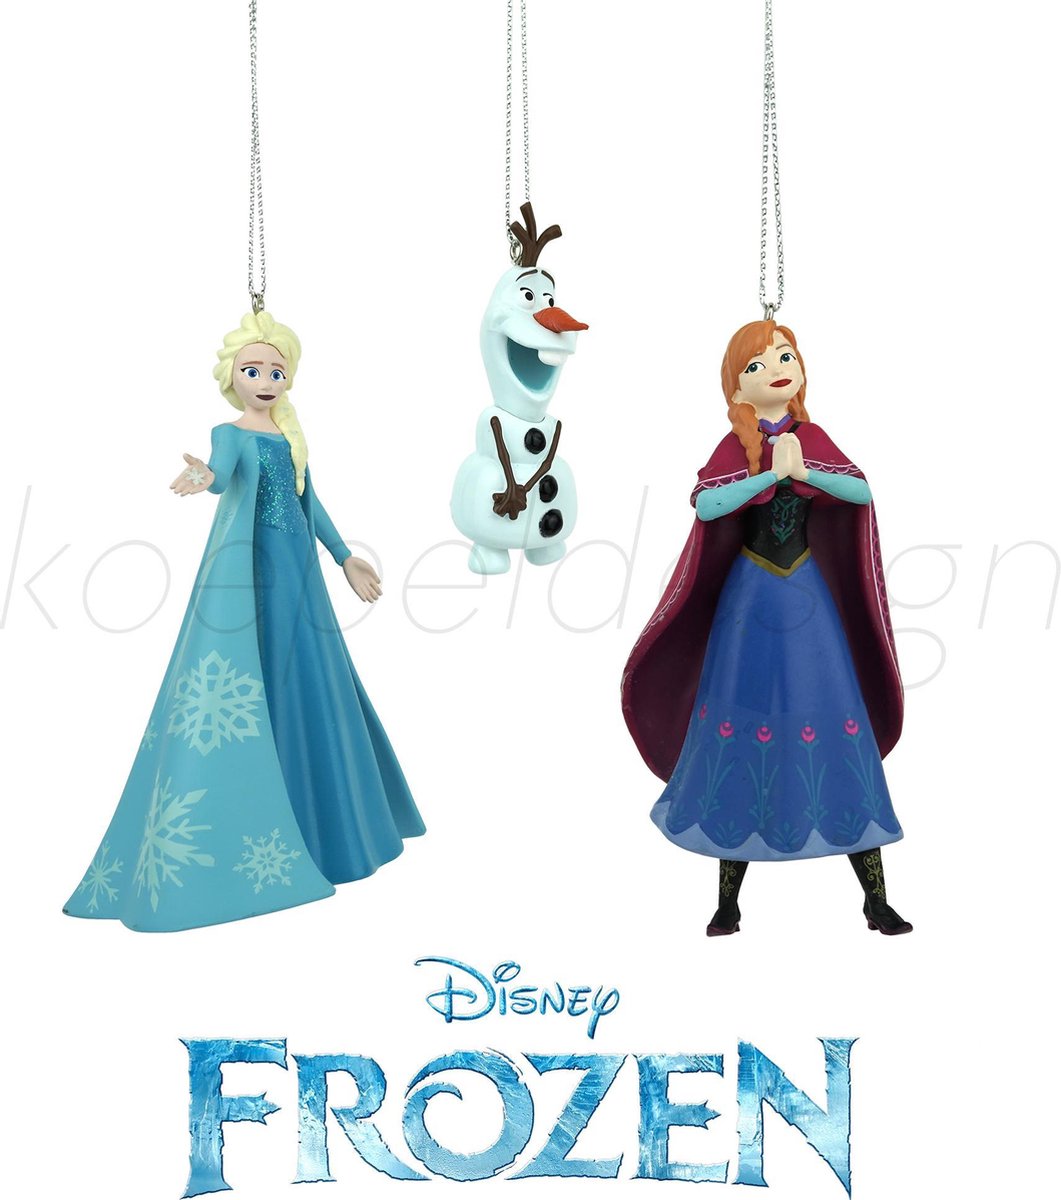 35 x 48 cm Polyester Disney Frozen 042953 3D Kissen Olaf 